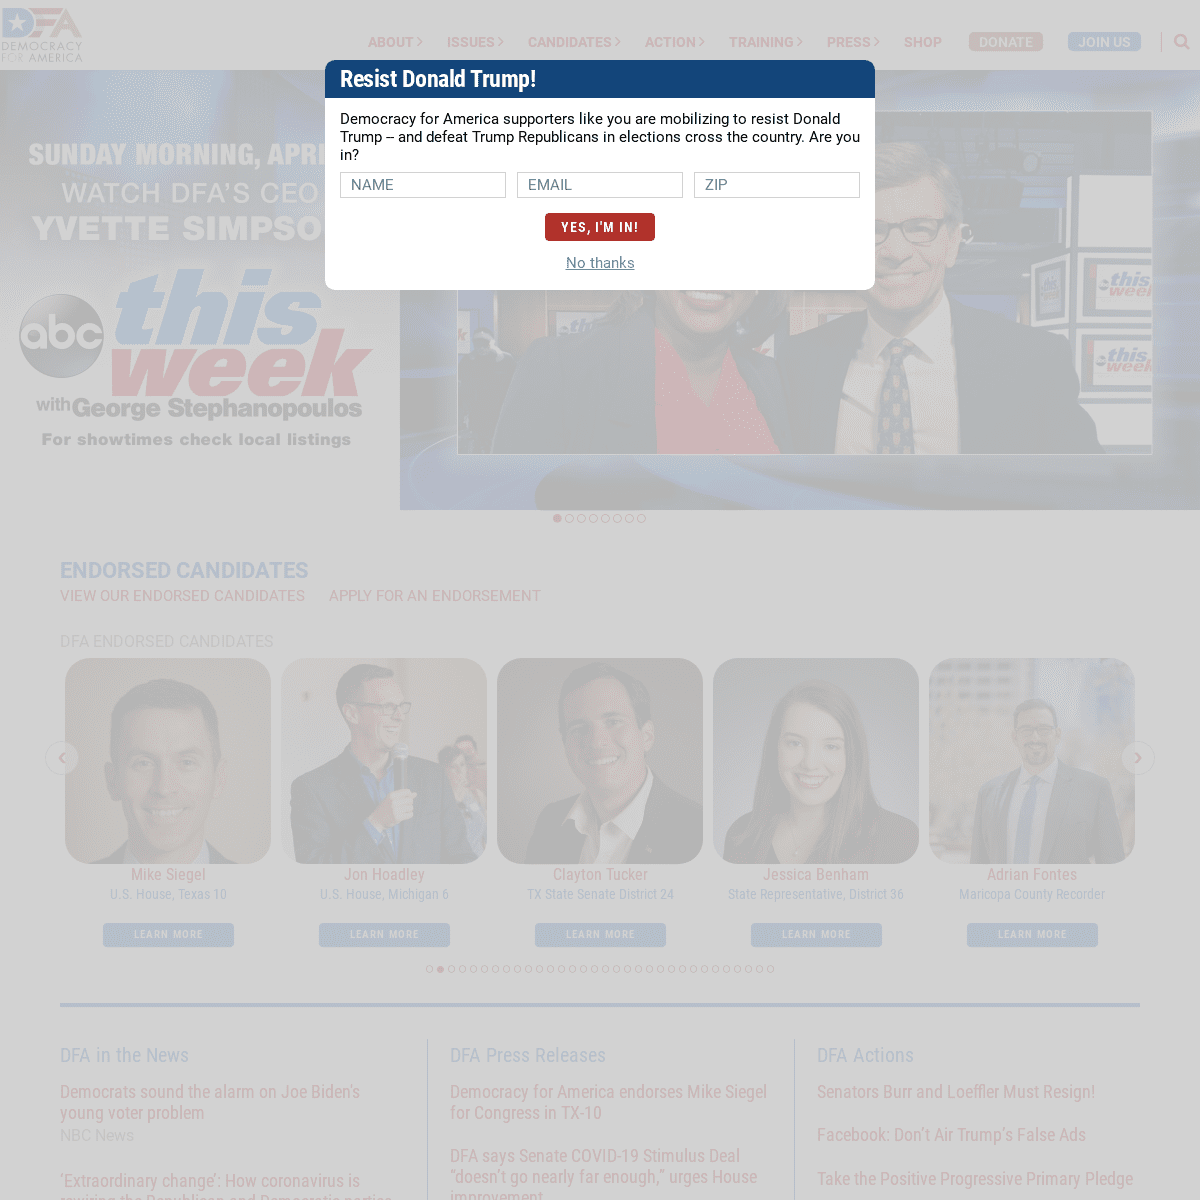 A complete backup of democracyforamerica.com